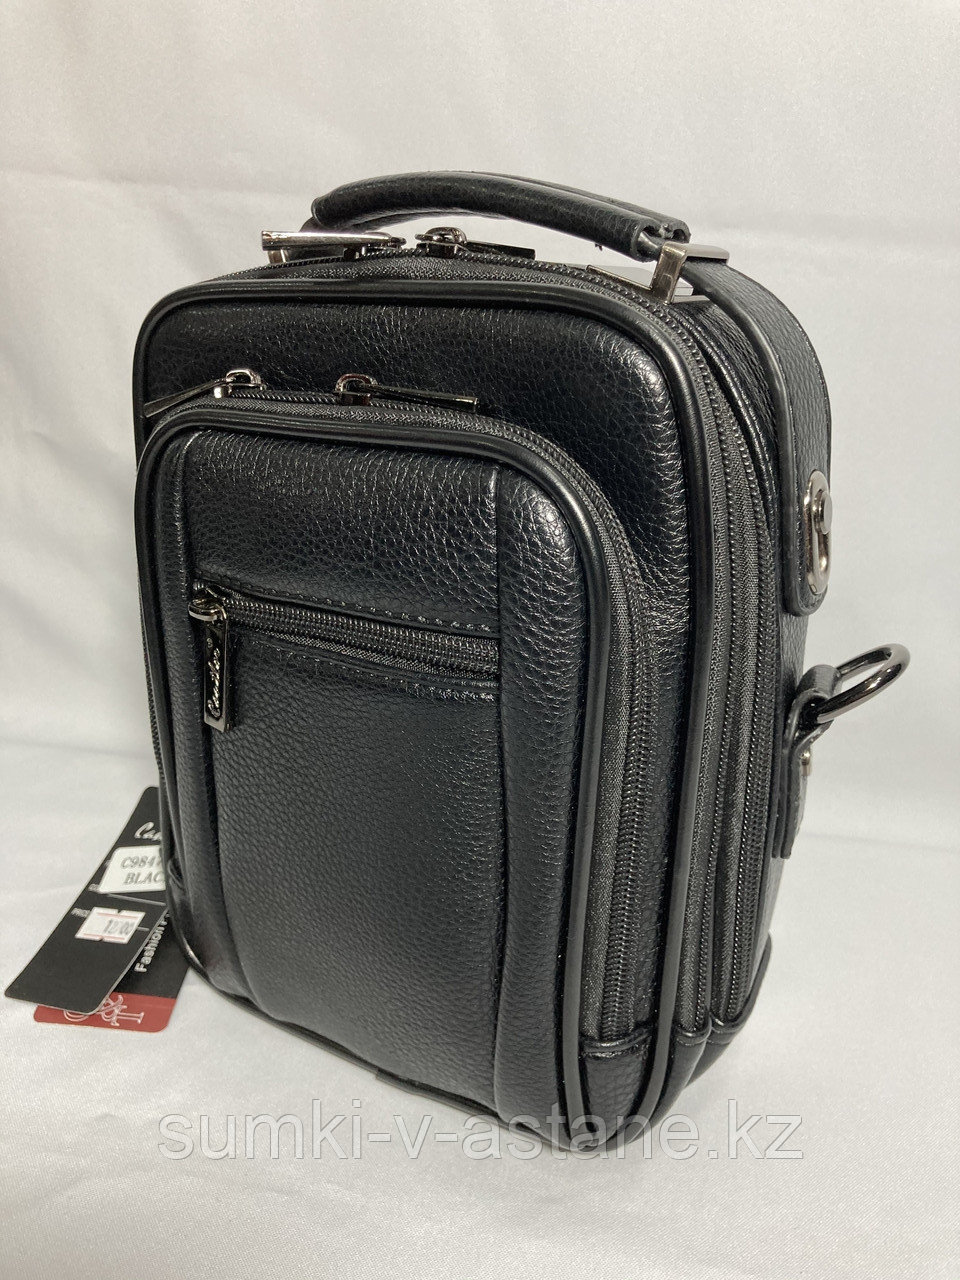 Мужская деловая сумка-барсетка "CANTLOR" (высота 23 см, ширина 18 см, глубина 8 см)